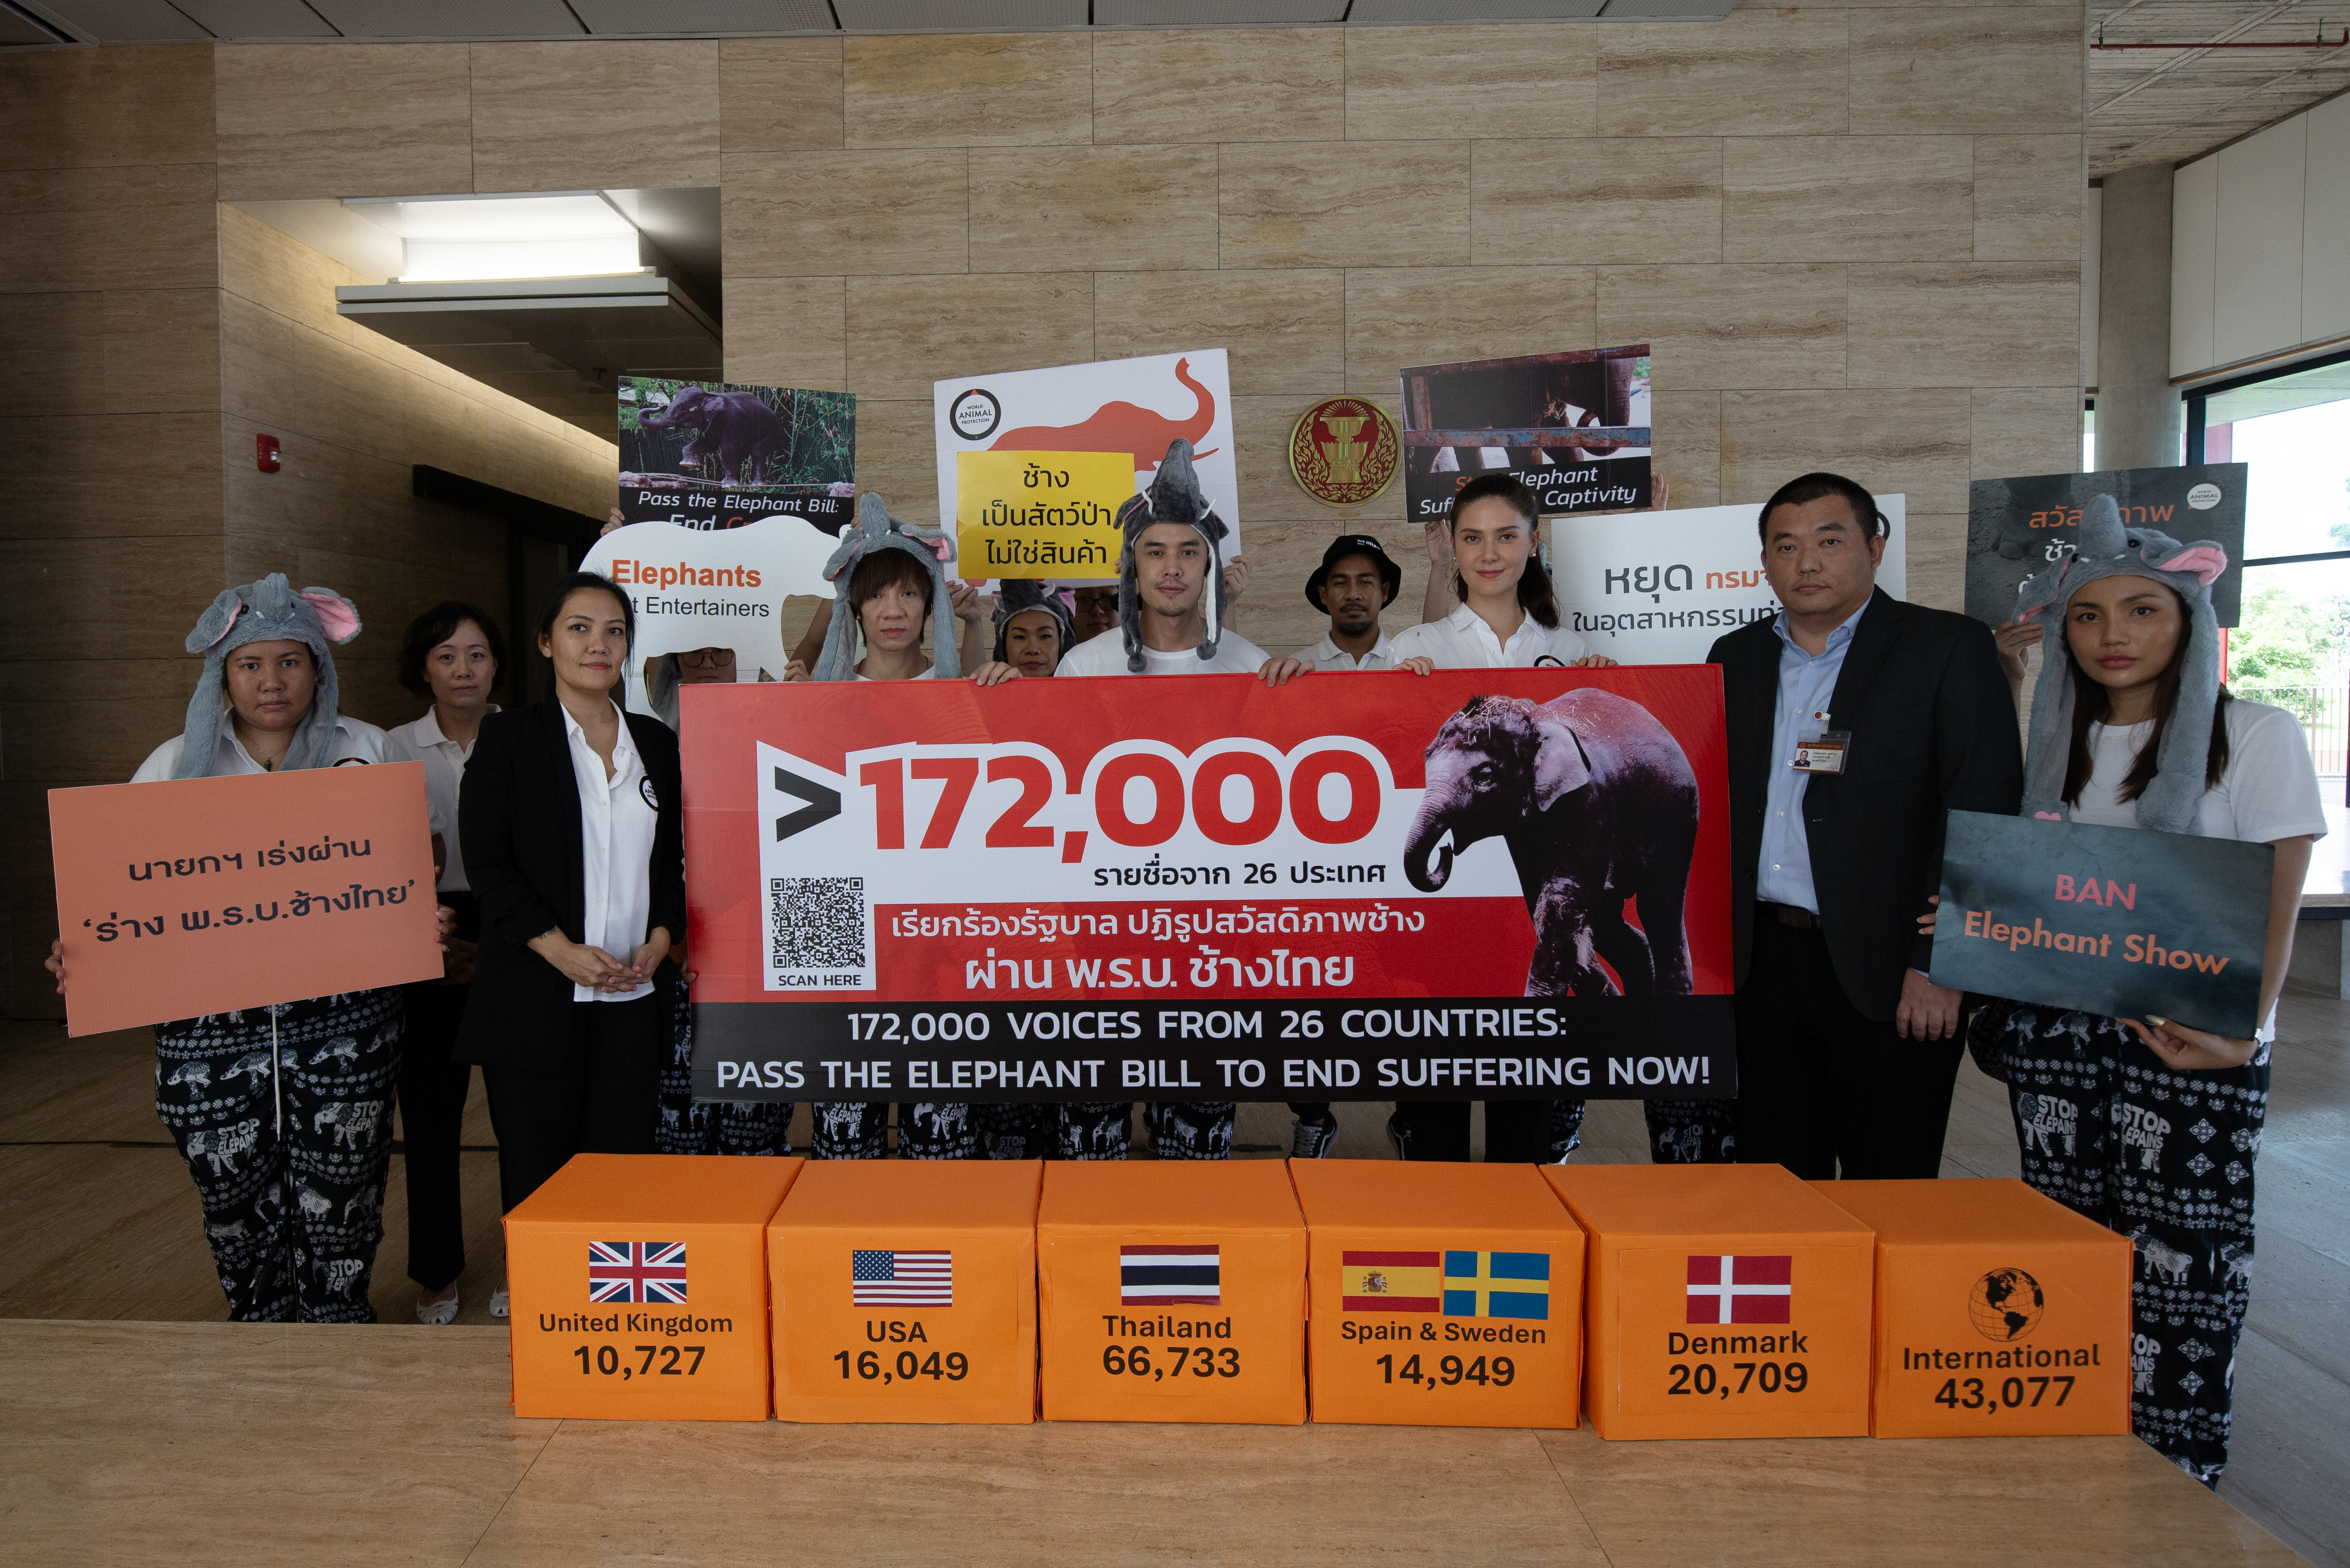 Vi har indsamlet over 172.000 underskrifter mod avl på elefanter i fangenskab i Thailand